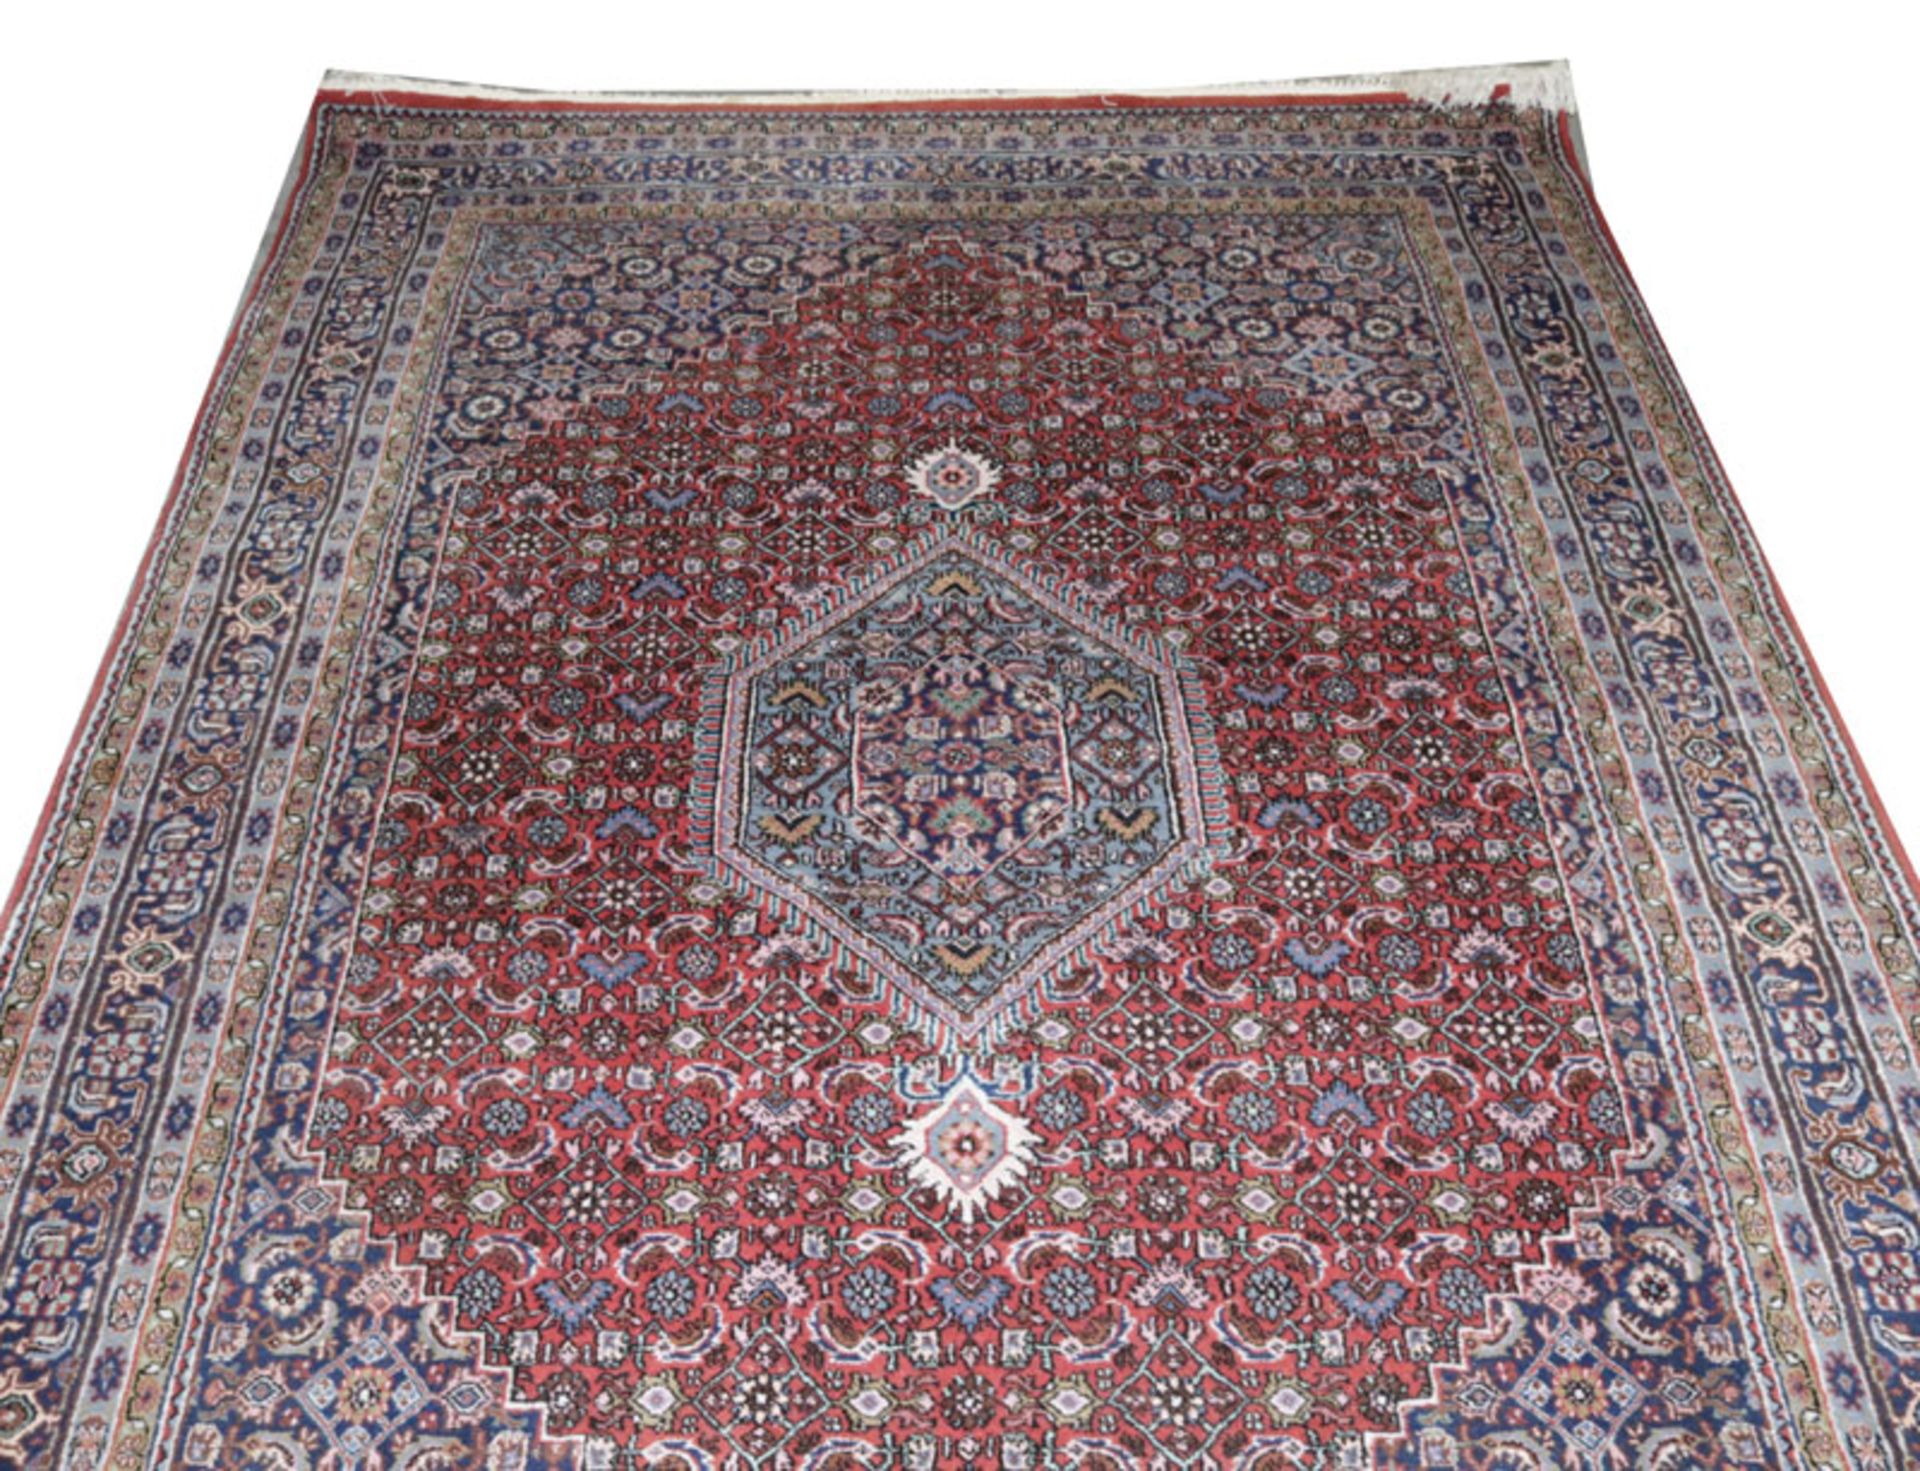 Teppich, Wiss, blau/rot/bunt, Gebrauchsspuren, 244 cm x 170 cm